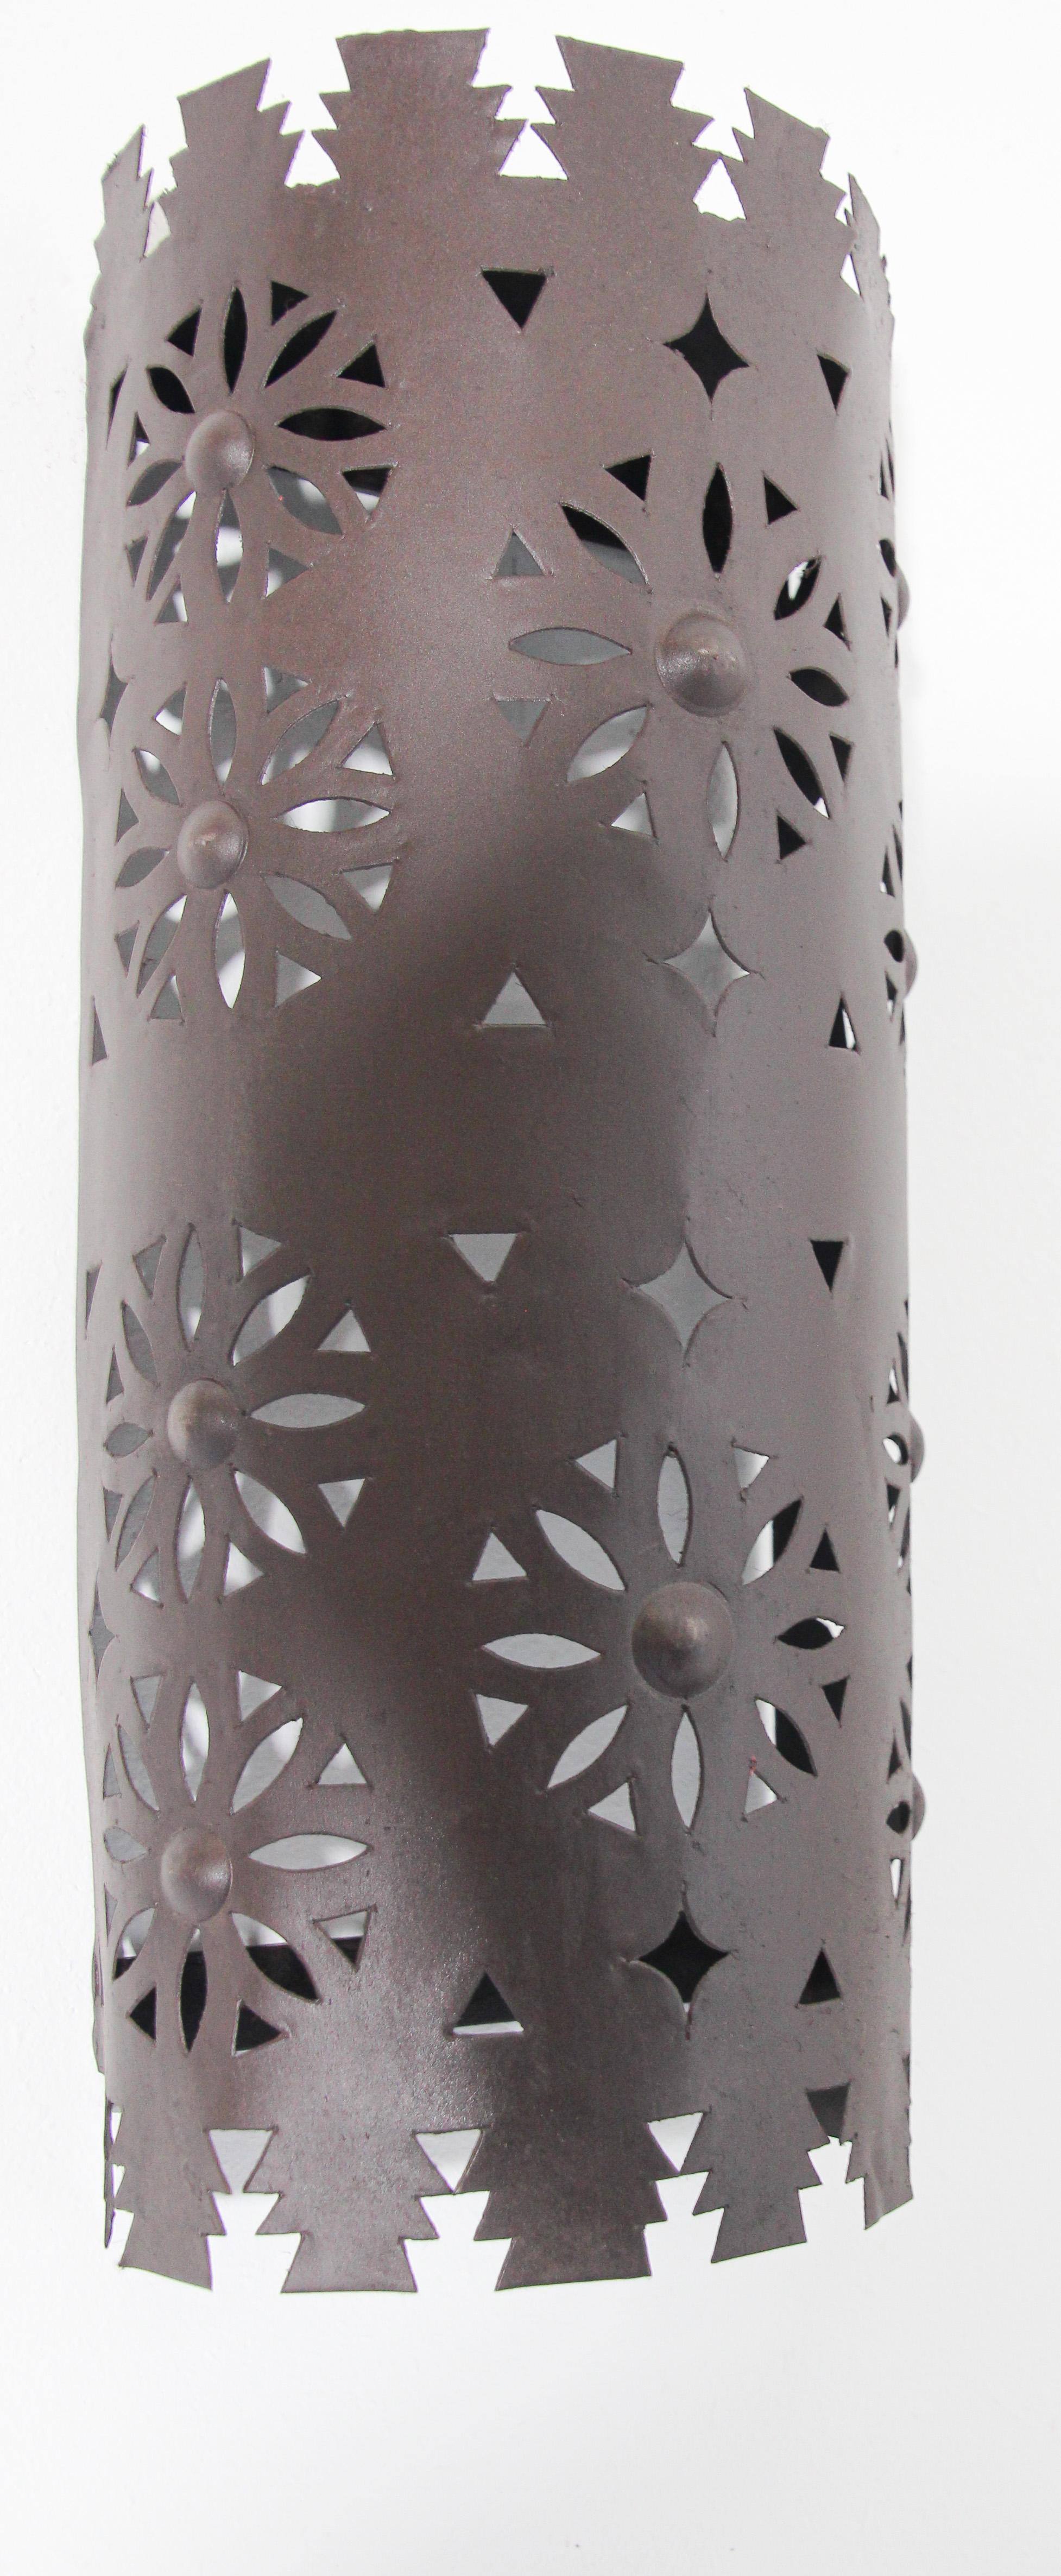 Handgefertigter marokkanisch-spanischer Tole-Leuchtenschirm aus Metall in Kegelform.
Hispano Moresque-Leuchtenschirm mit ausgeschnittenen Sternen und Halbmonden.
Dunkle Rostpatina,
Zur Verwendung im Innen- und Außenbereich.
Kein Stromanschluss,